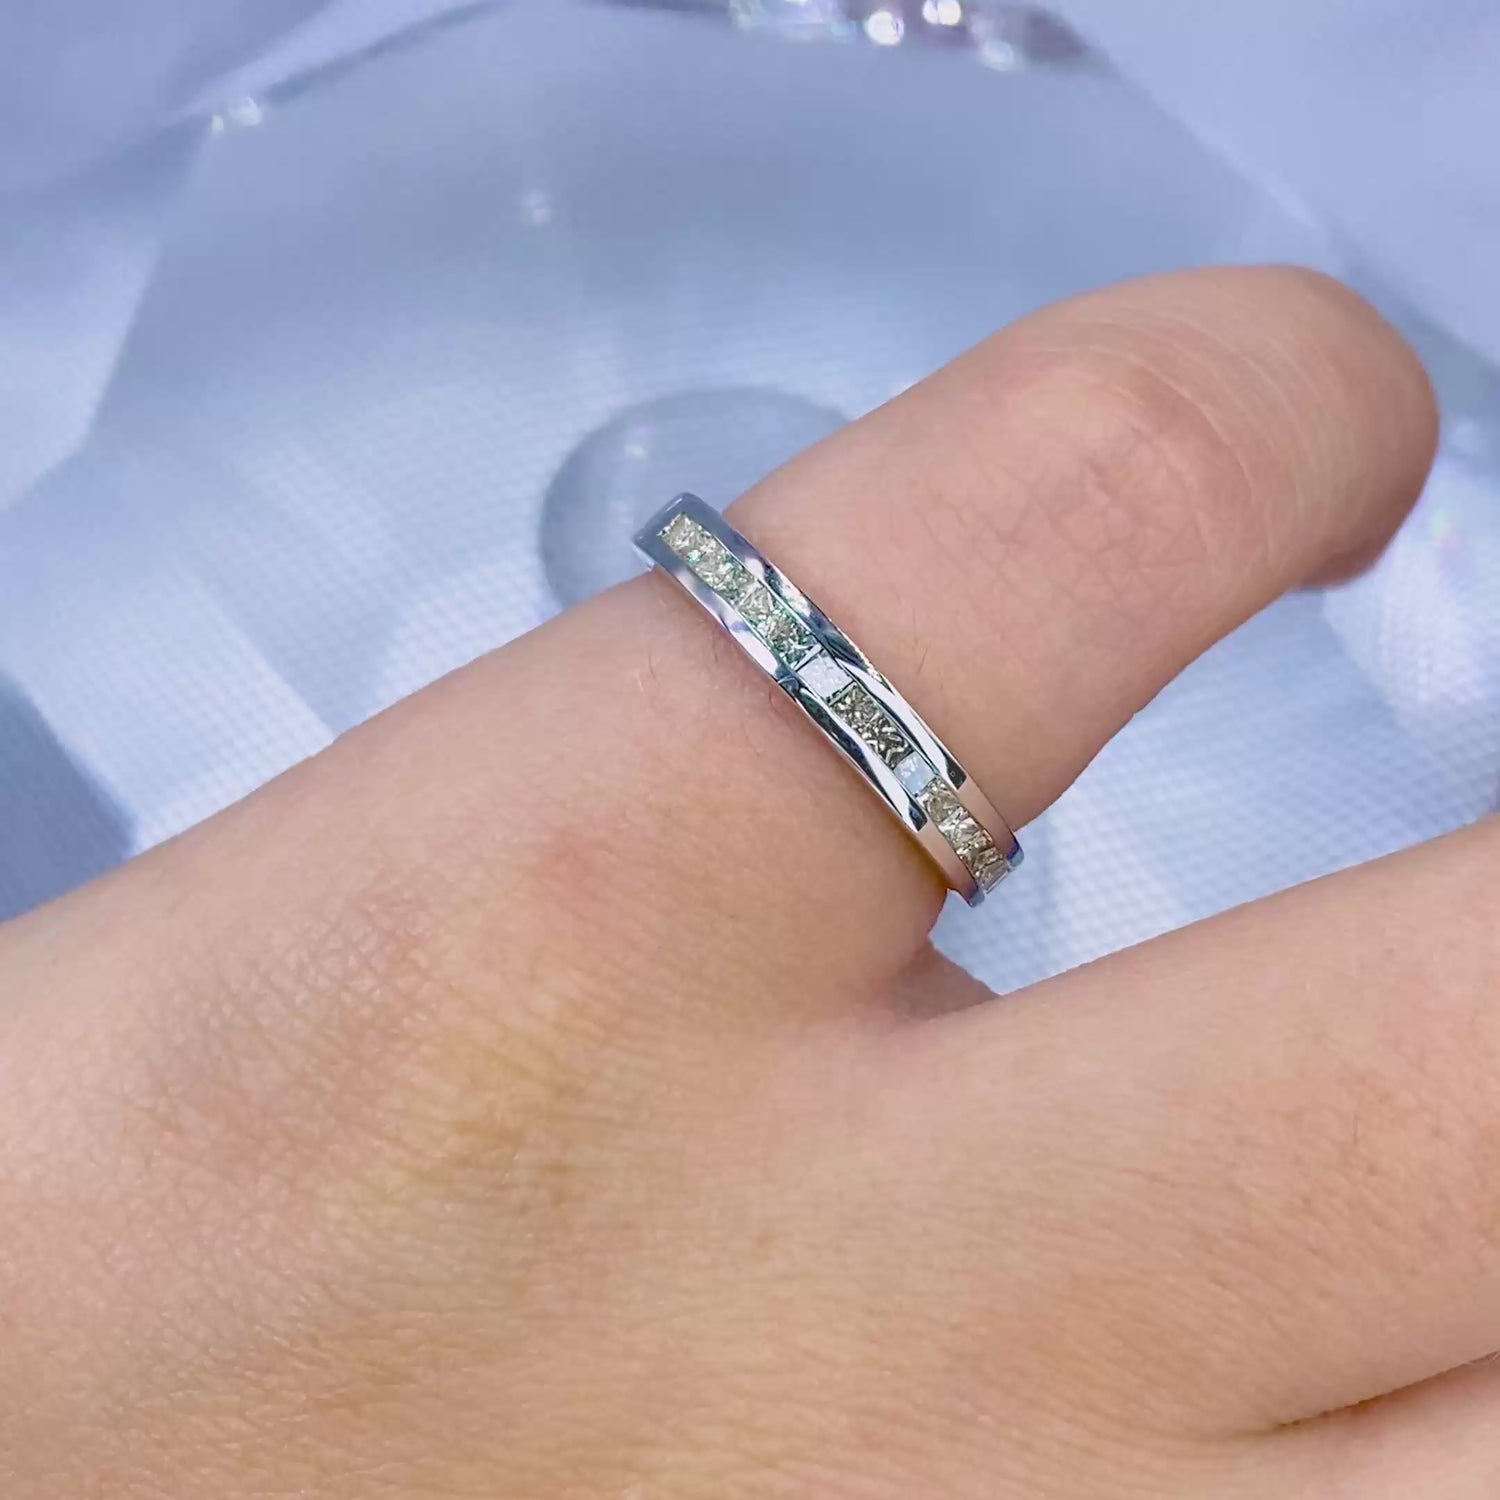 Elegant 1.10 CT Princess Cut Diamond Wedding Ring in 18KT White Gold